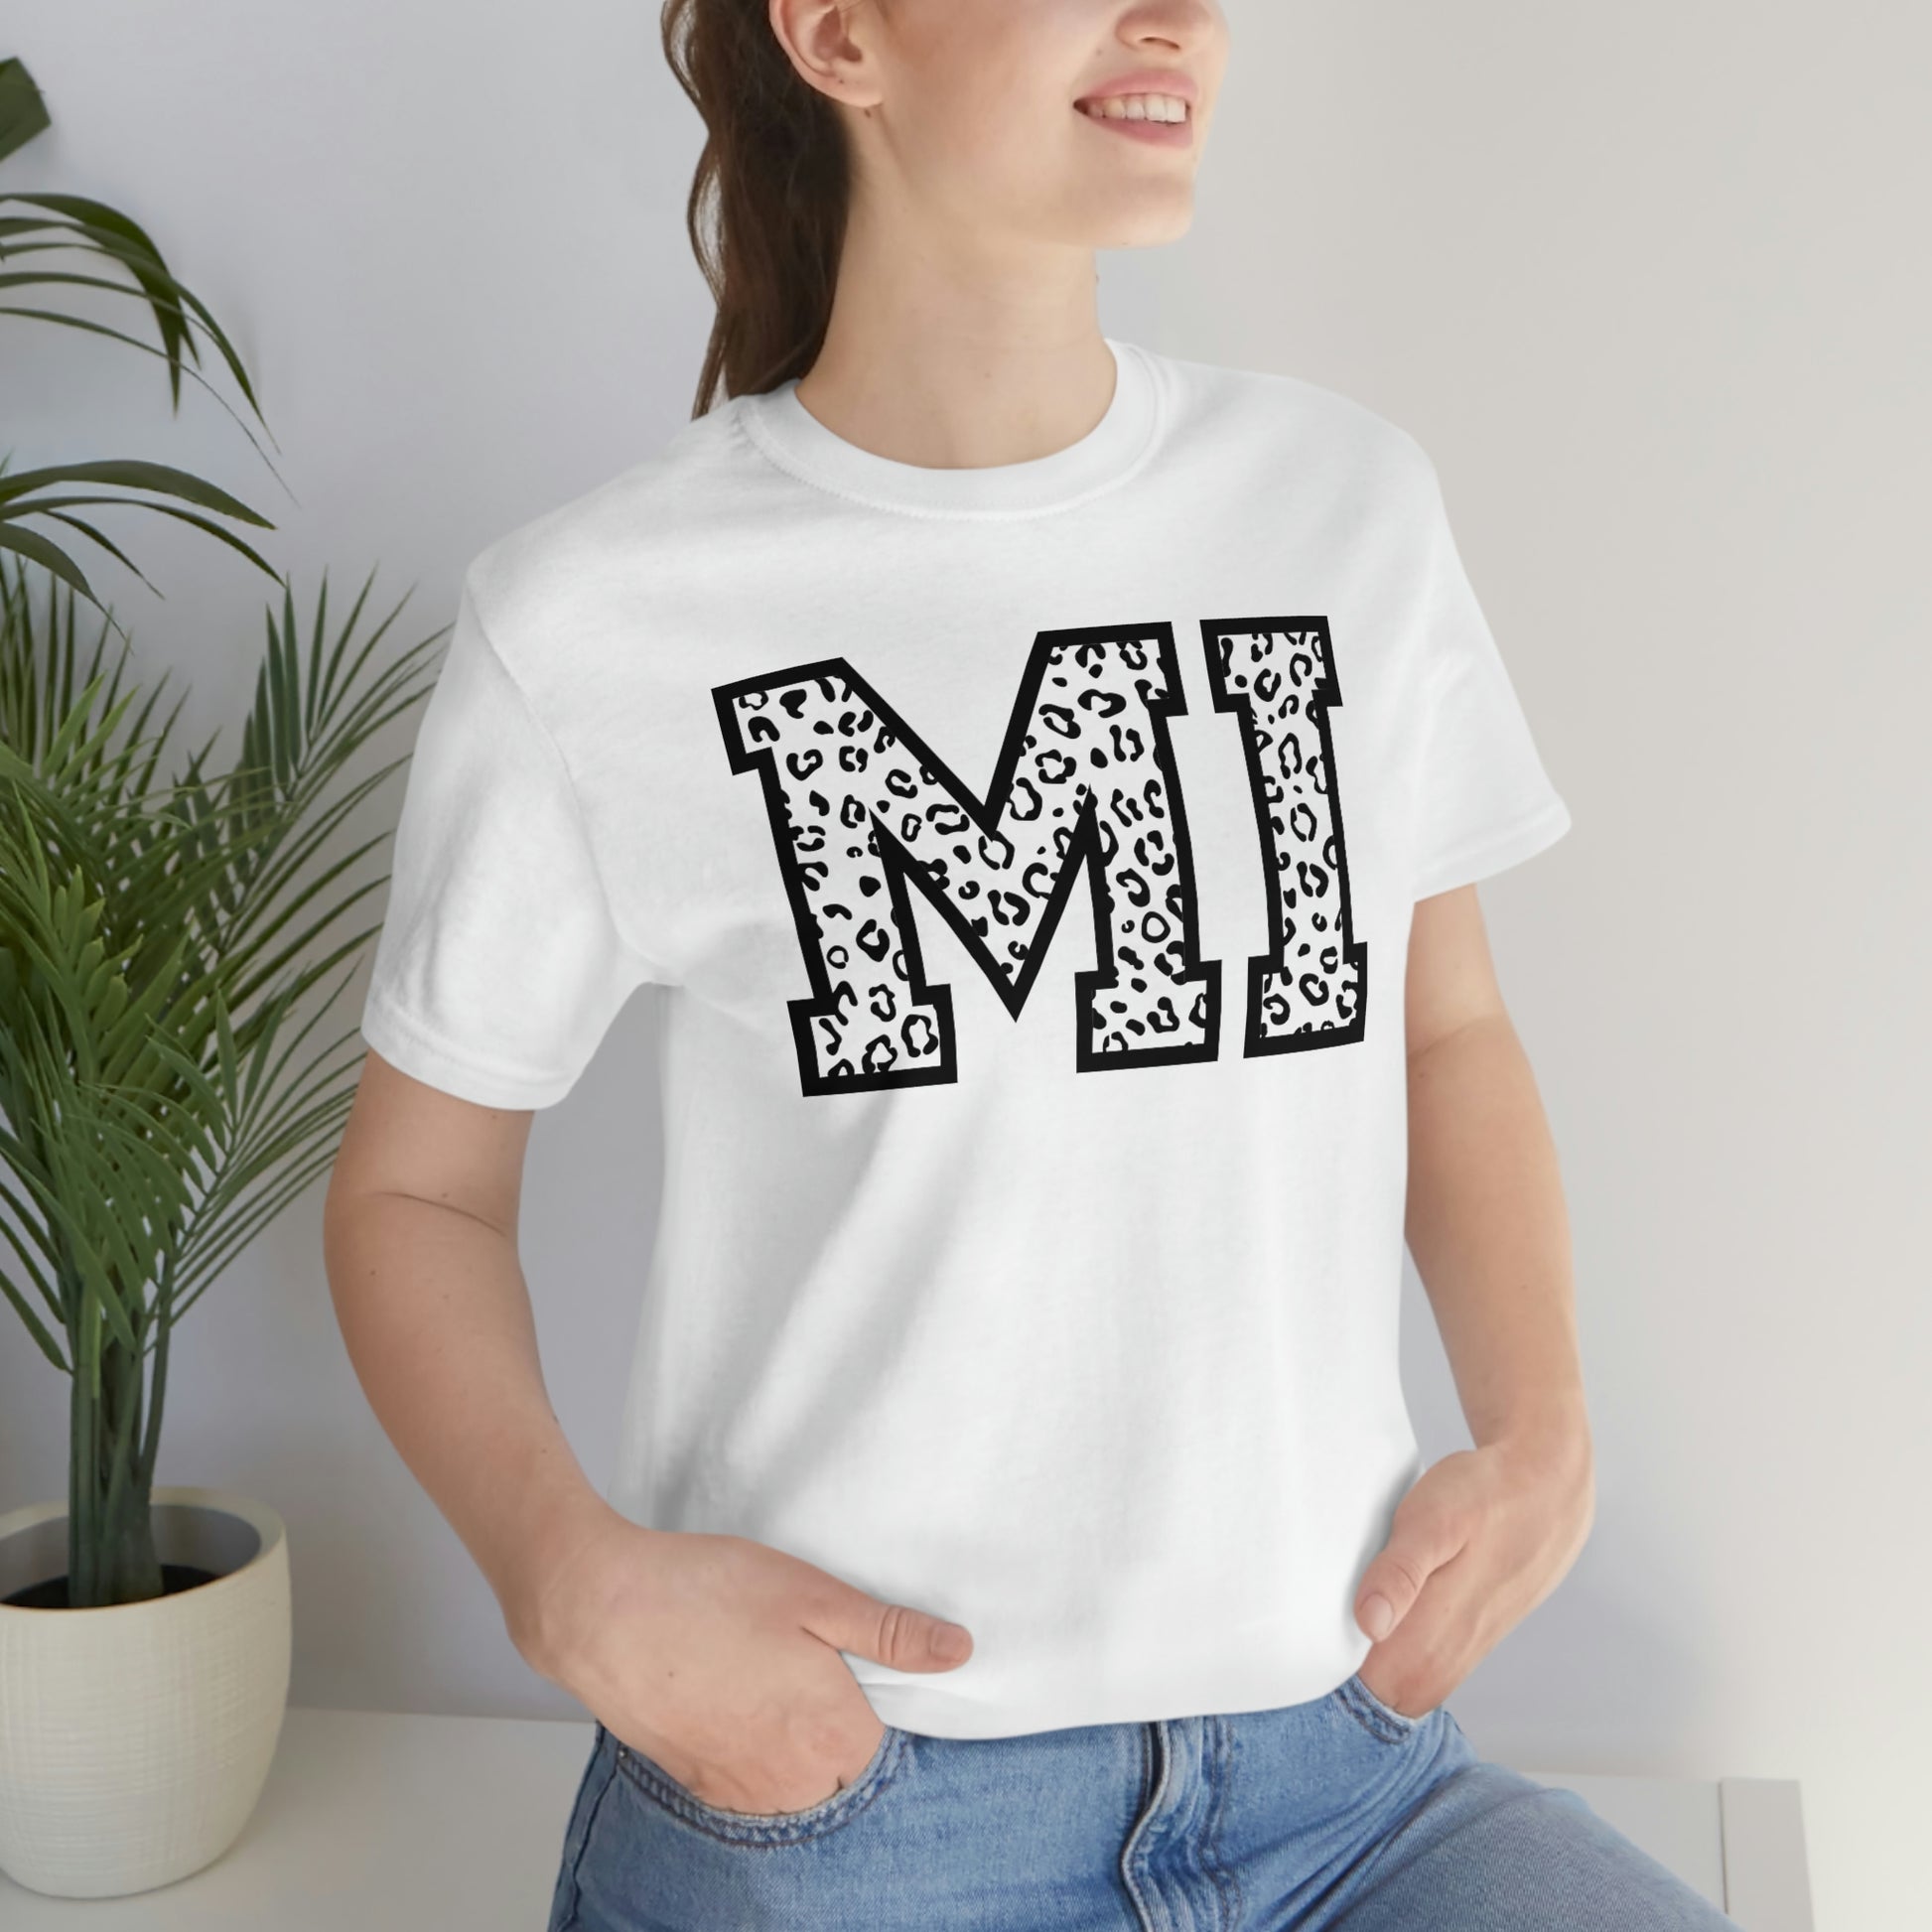 Michigan MI Leopard Print Letters Short Sleeve T-shirt